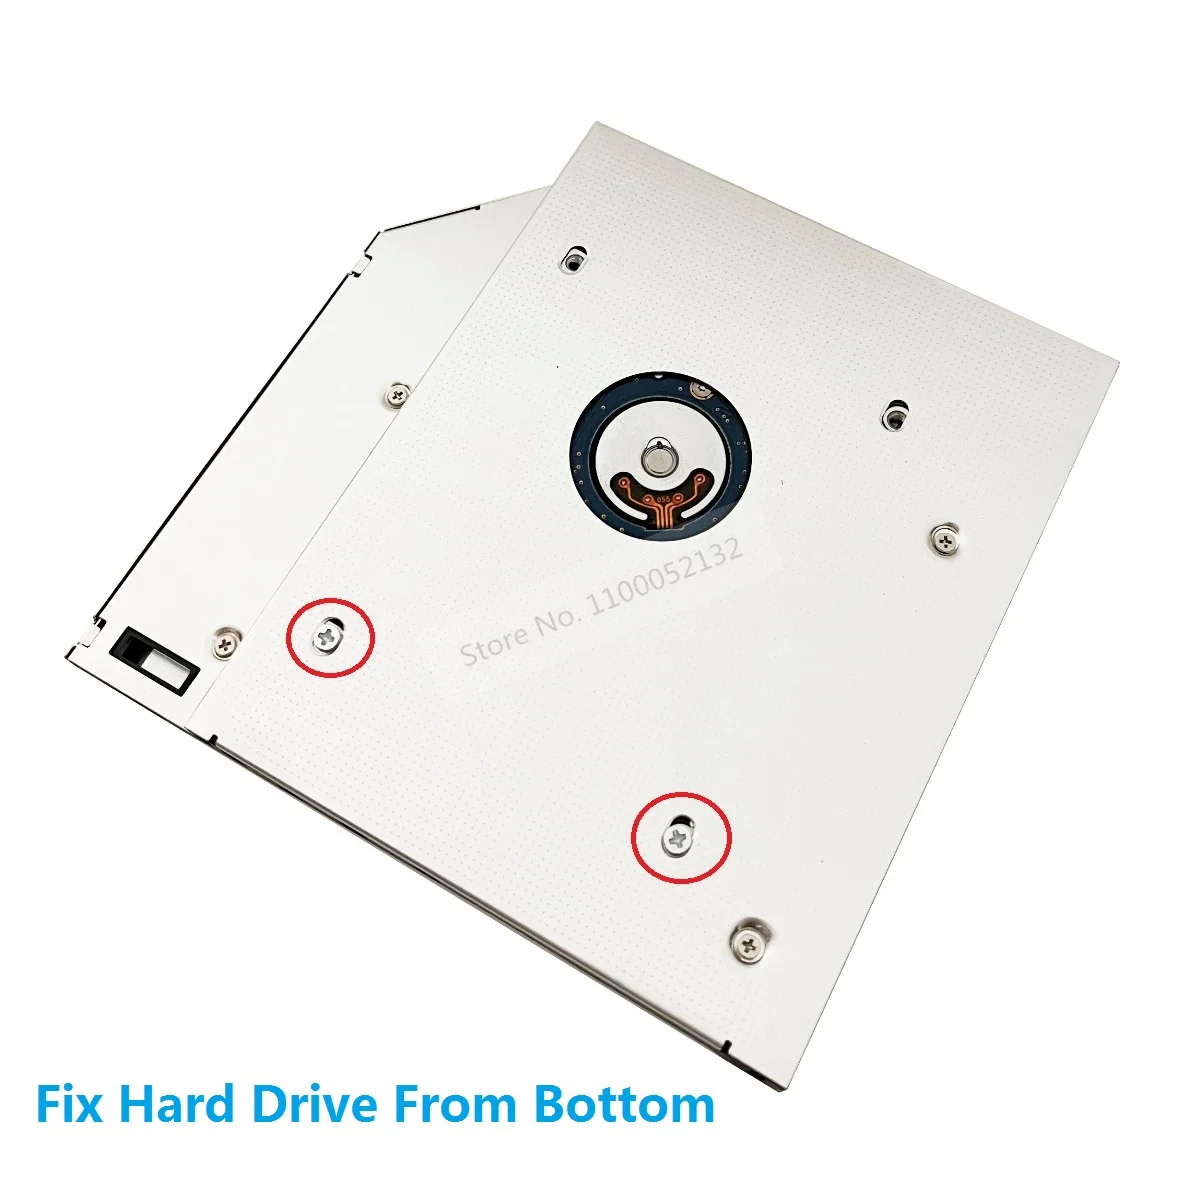 Alumínio 2ª Unidade de disco Rígido HDD SSD Caso Óptico Caddy SATA para Fujitsu Lifebook E751 S751 E752 E780 E781 E782 T900 T901 S780 S710 Imagem 1